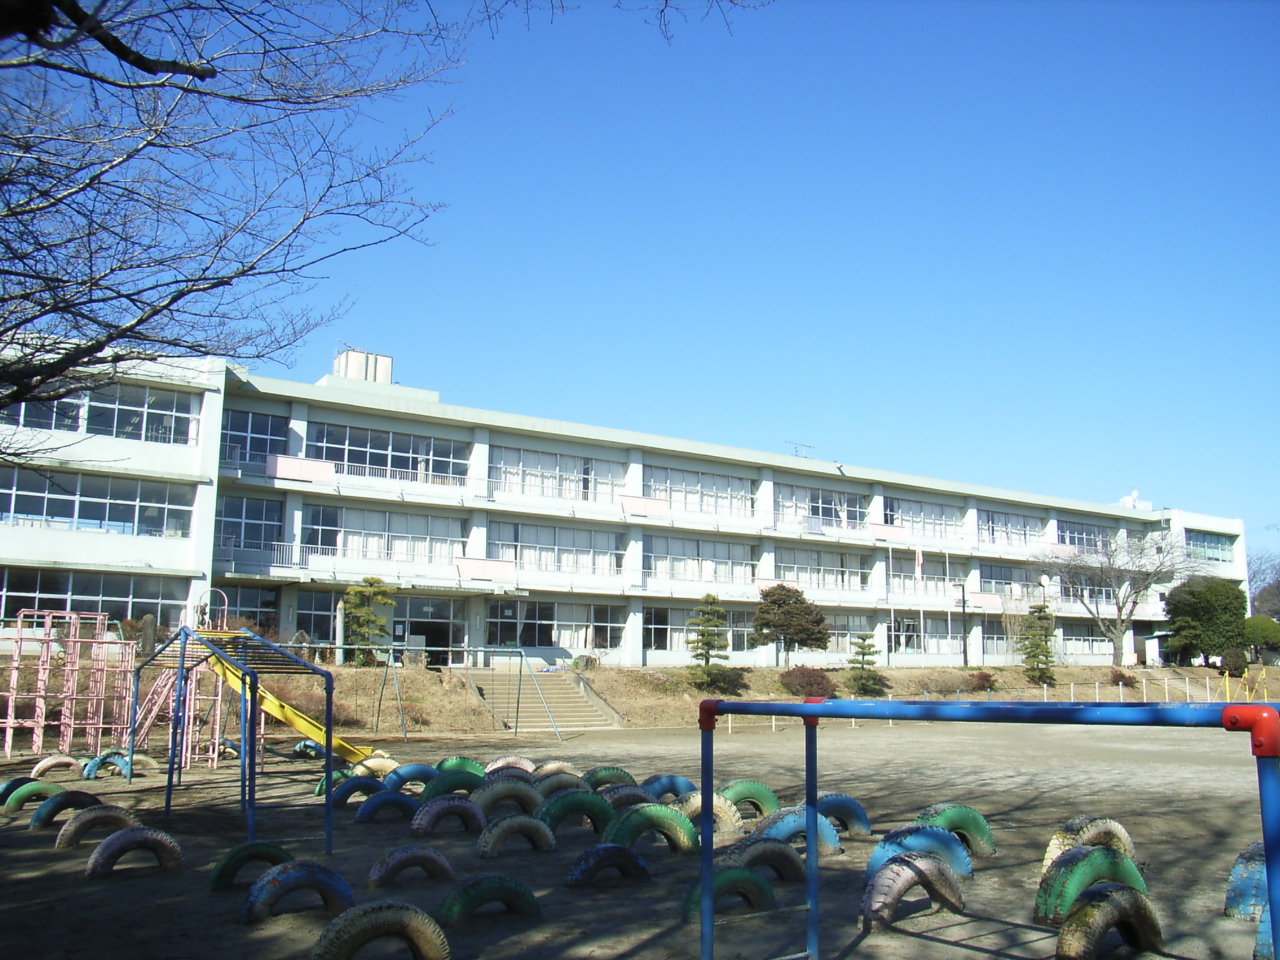 Primary school. Nephew ball Municipal Ogawa Elementary School (elementary school) up to 500m